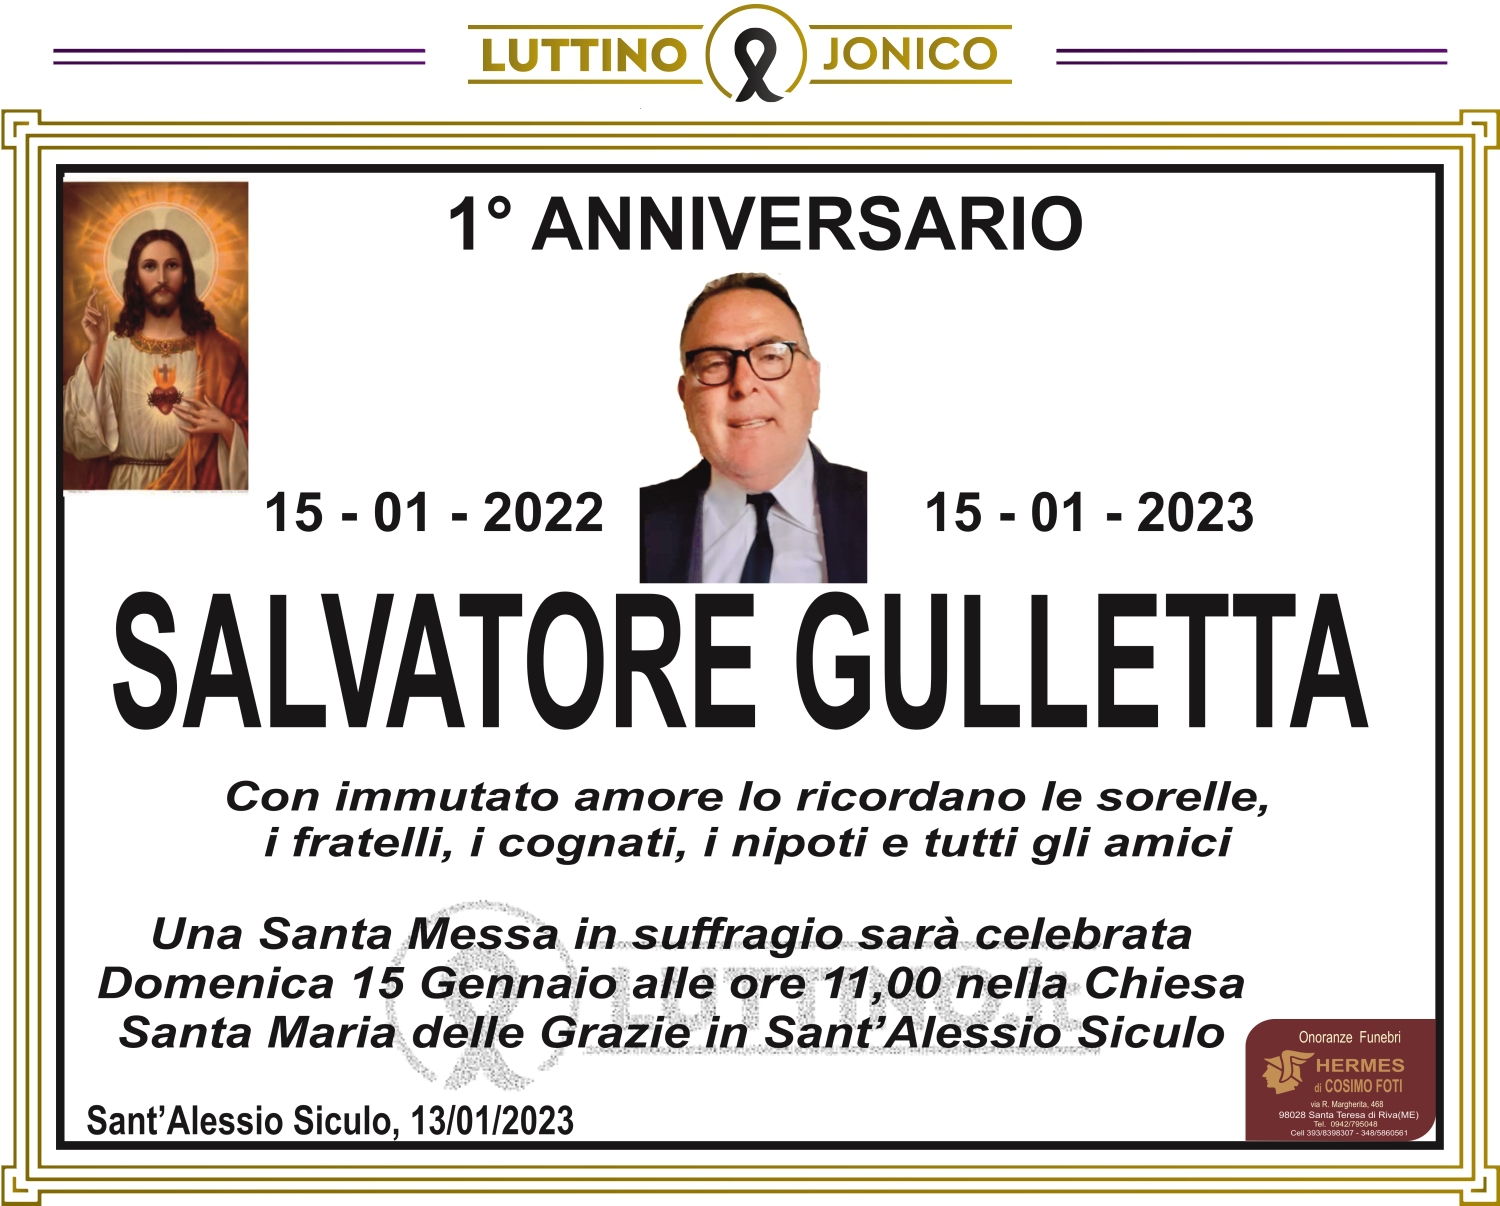 Salvatore Gulletta